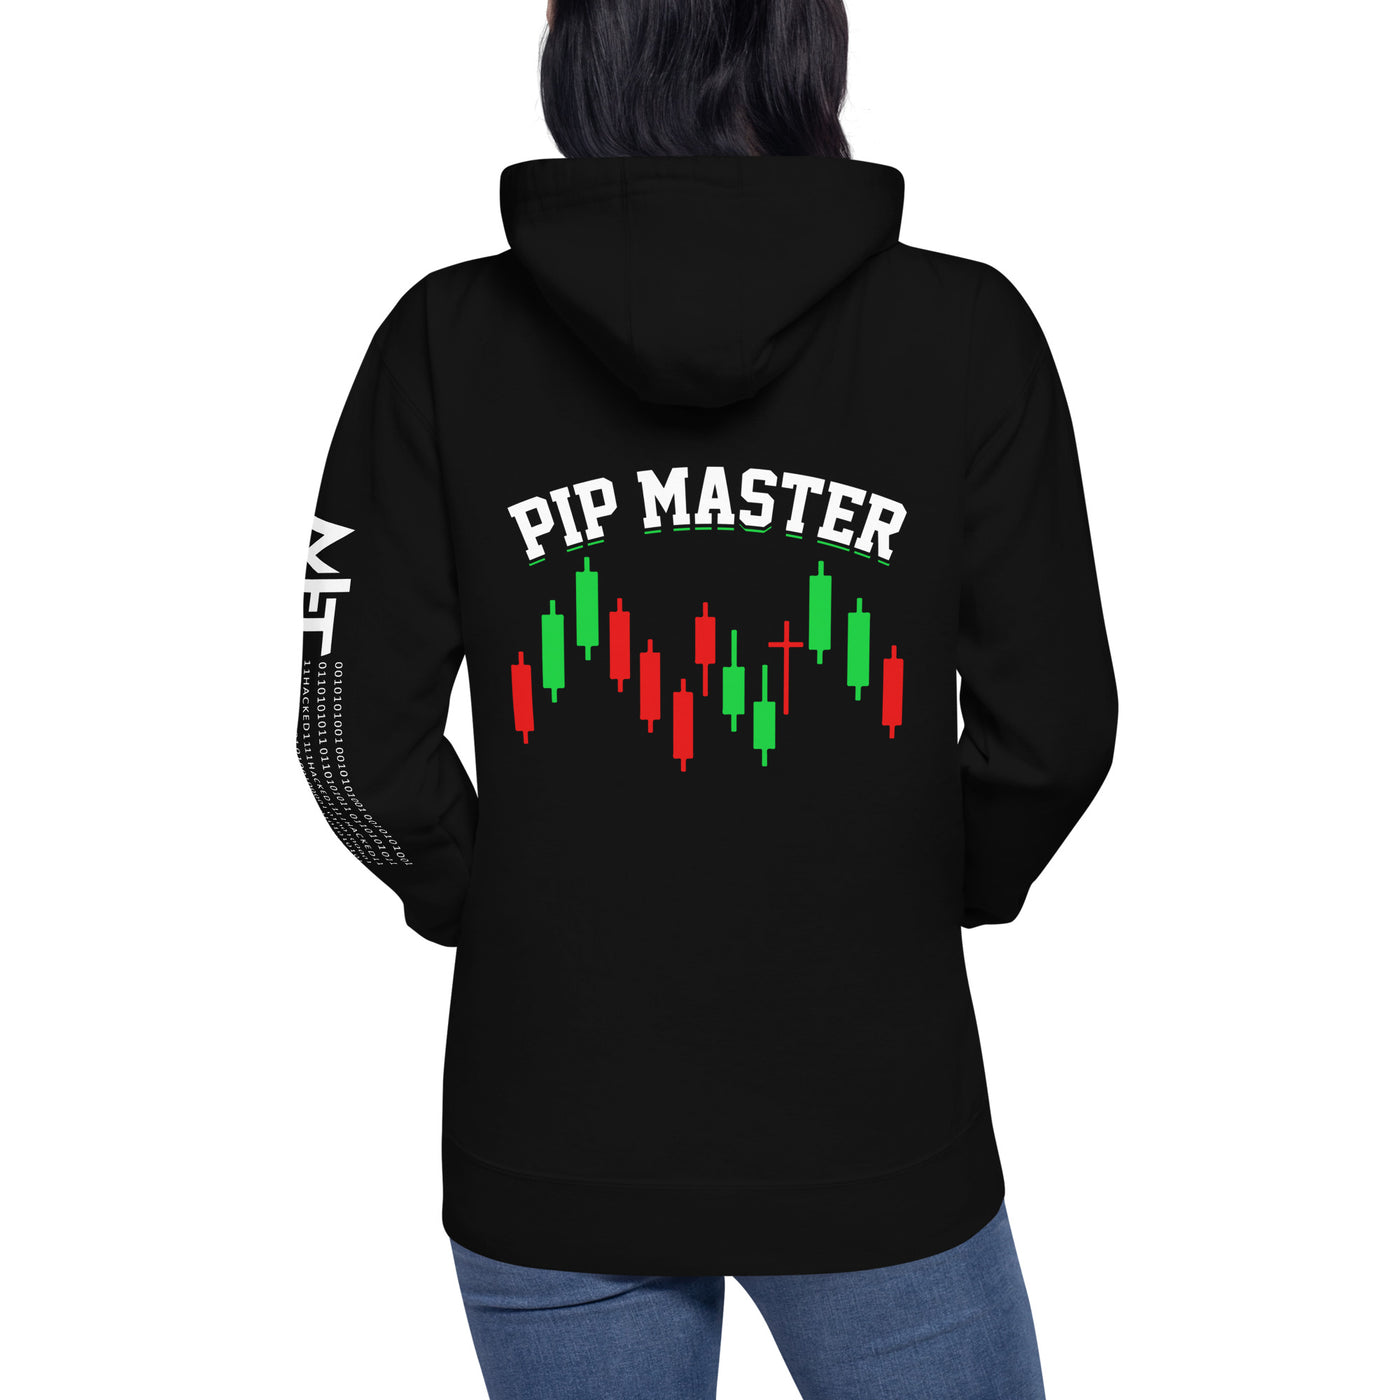 Pip Master - Unisex Hoodie ( Back Print )